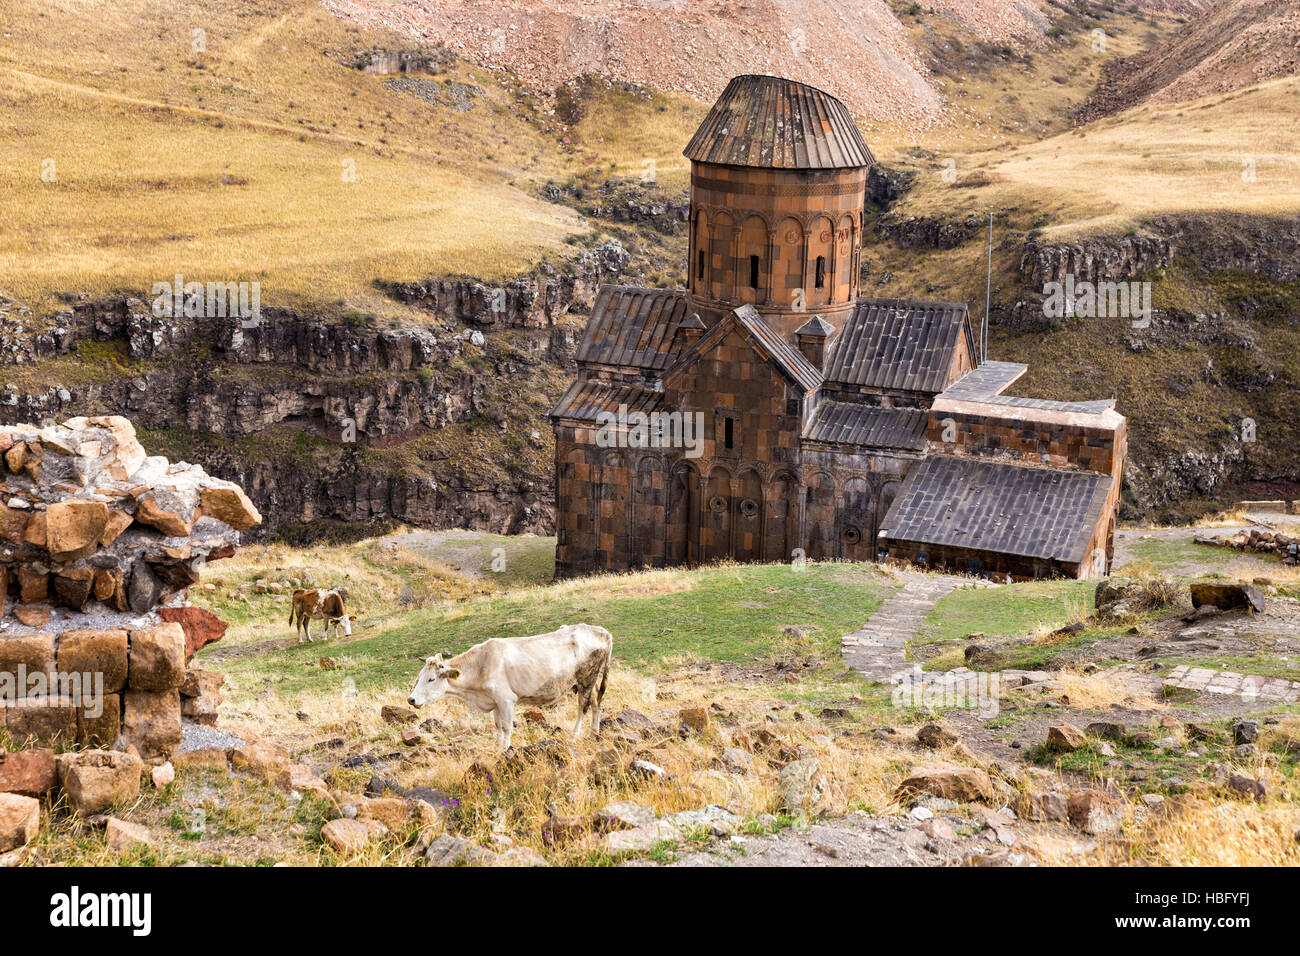 Vista de San Gregorio de Tigran Honents en ANI. Ani es una ciudad medieval armenio en ruinas situada en la provincia turca de Kars. Foto de stock